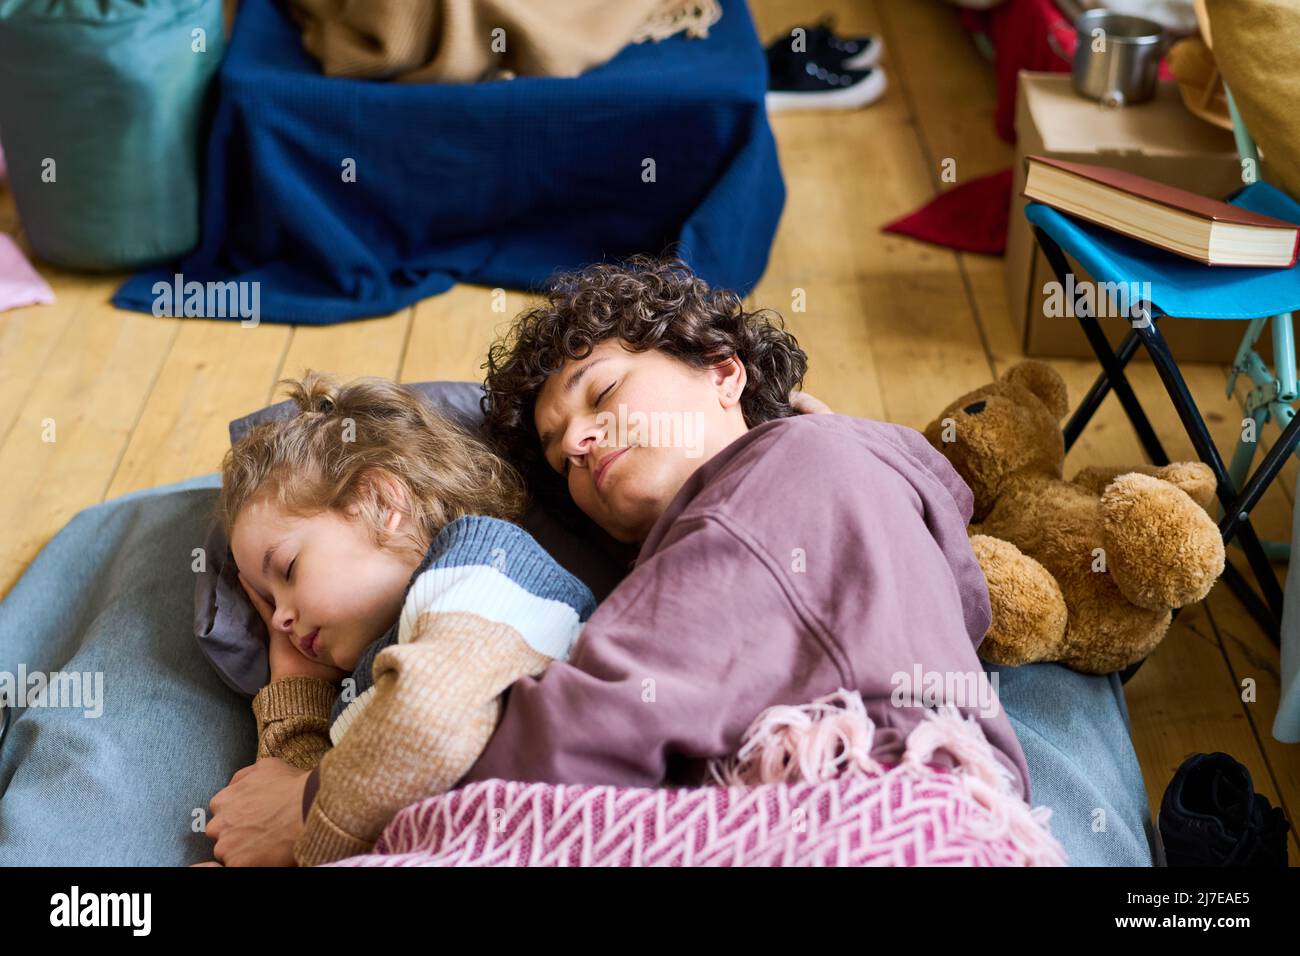 Adorabile ragazzo con capelli biondi ricci e sua madre che dorme sotto la coperta sul pavimento della stanza con i materassi per i rifugiati Foto Stock